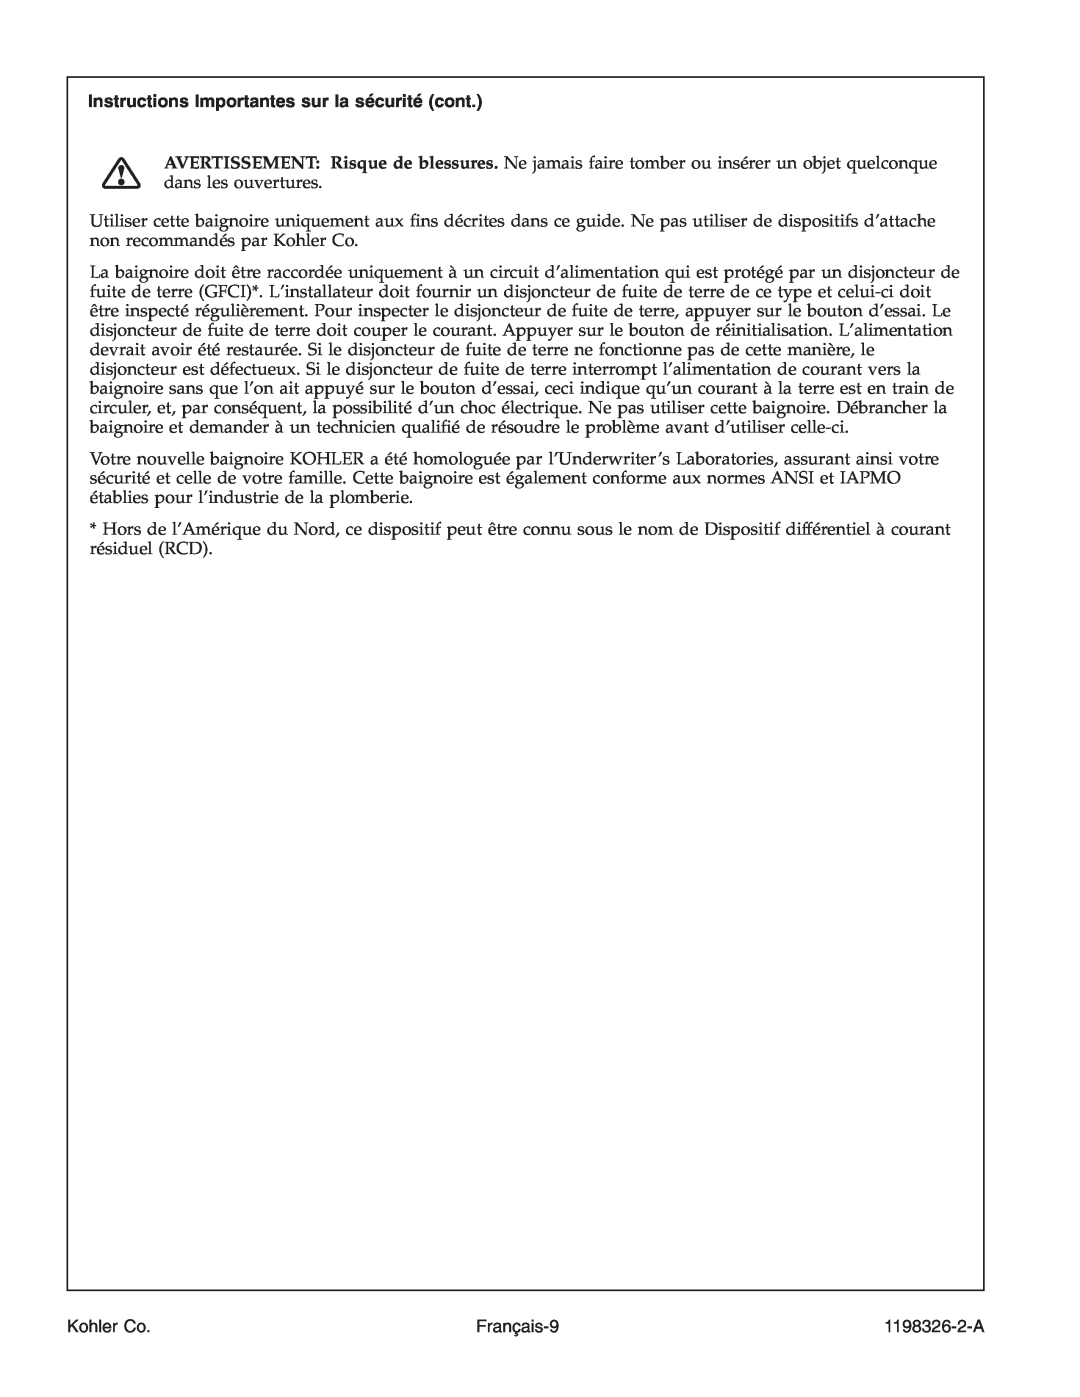 Kohler 1198326-2-A manual Instructions Importantes sur la sécurité cont, Français-9, Kohler Co 